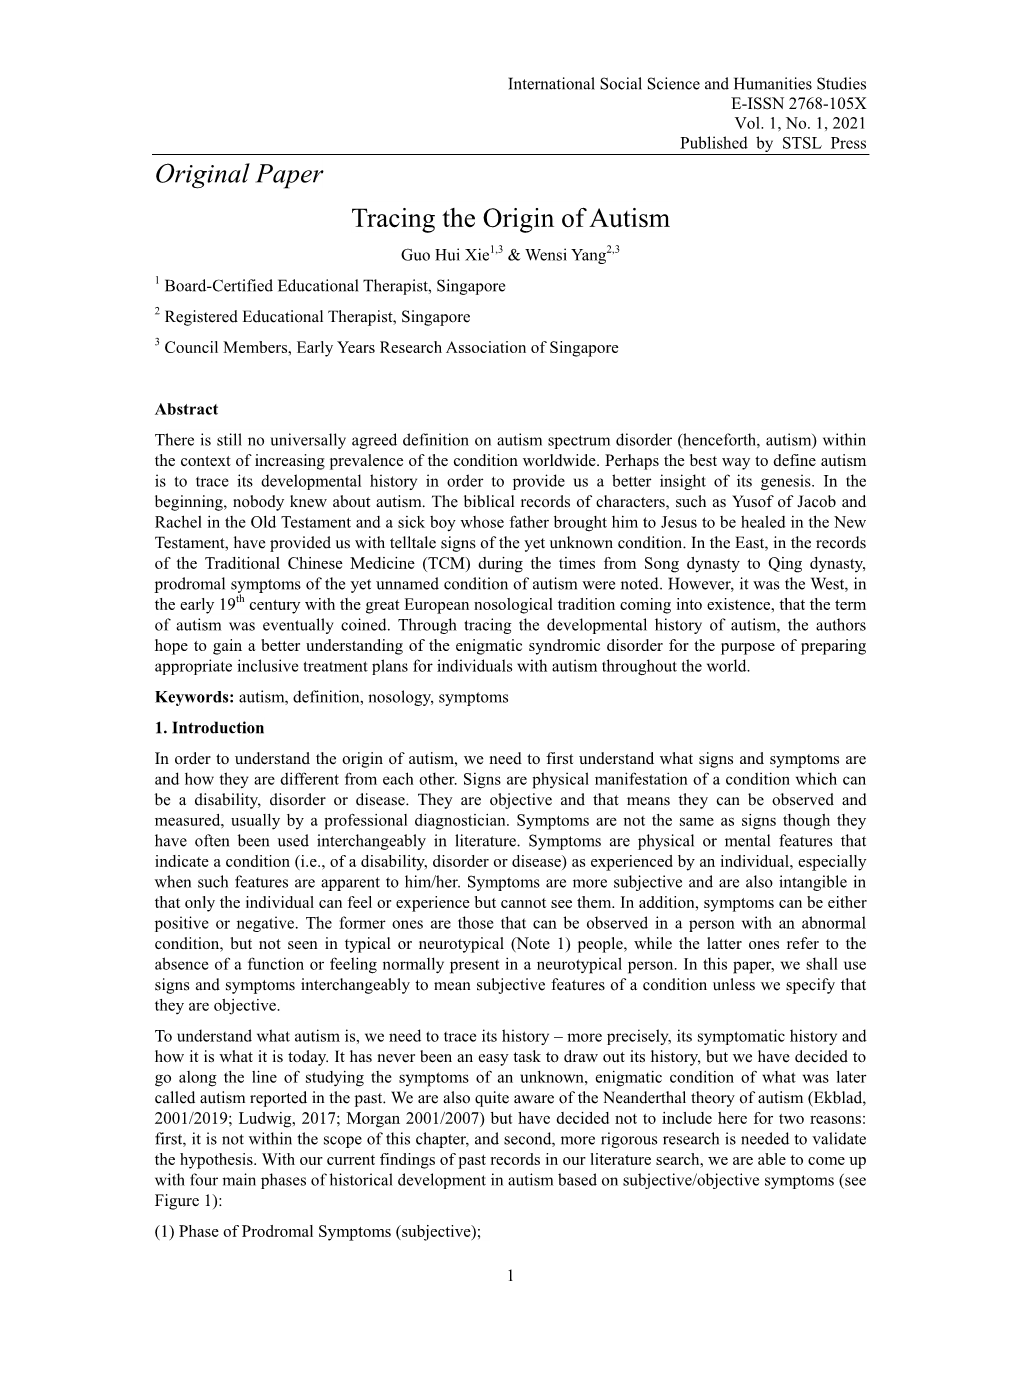 Original Paper Tracing the Origin of Autism